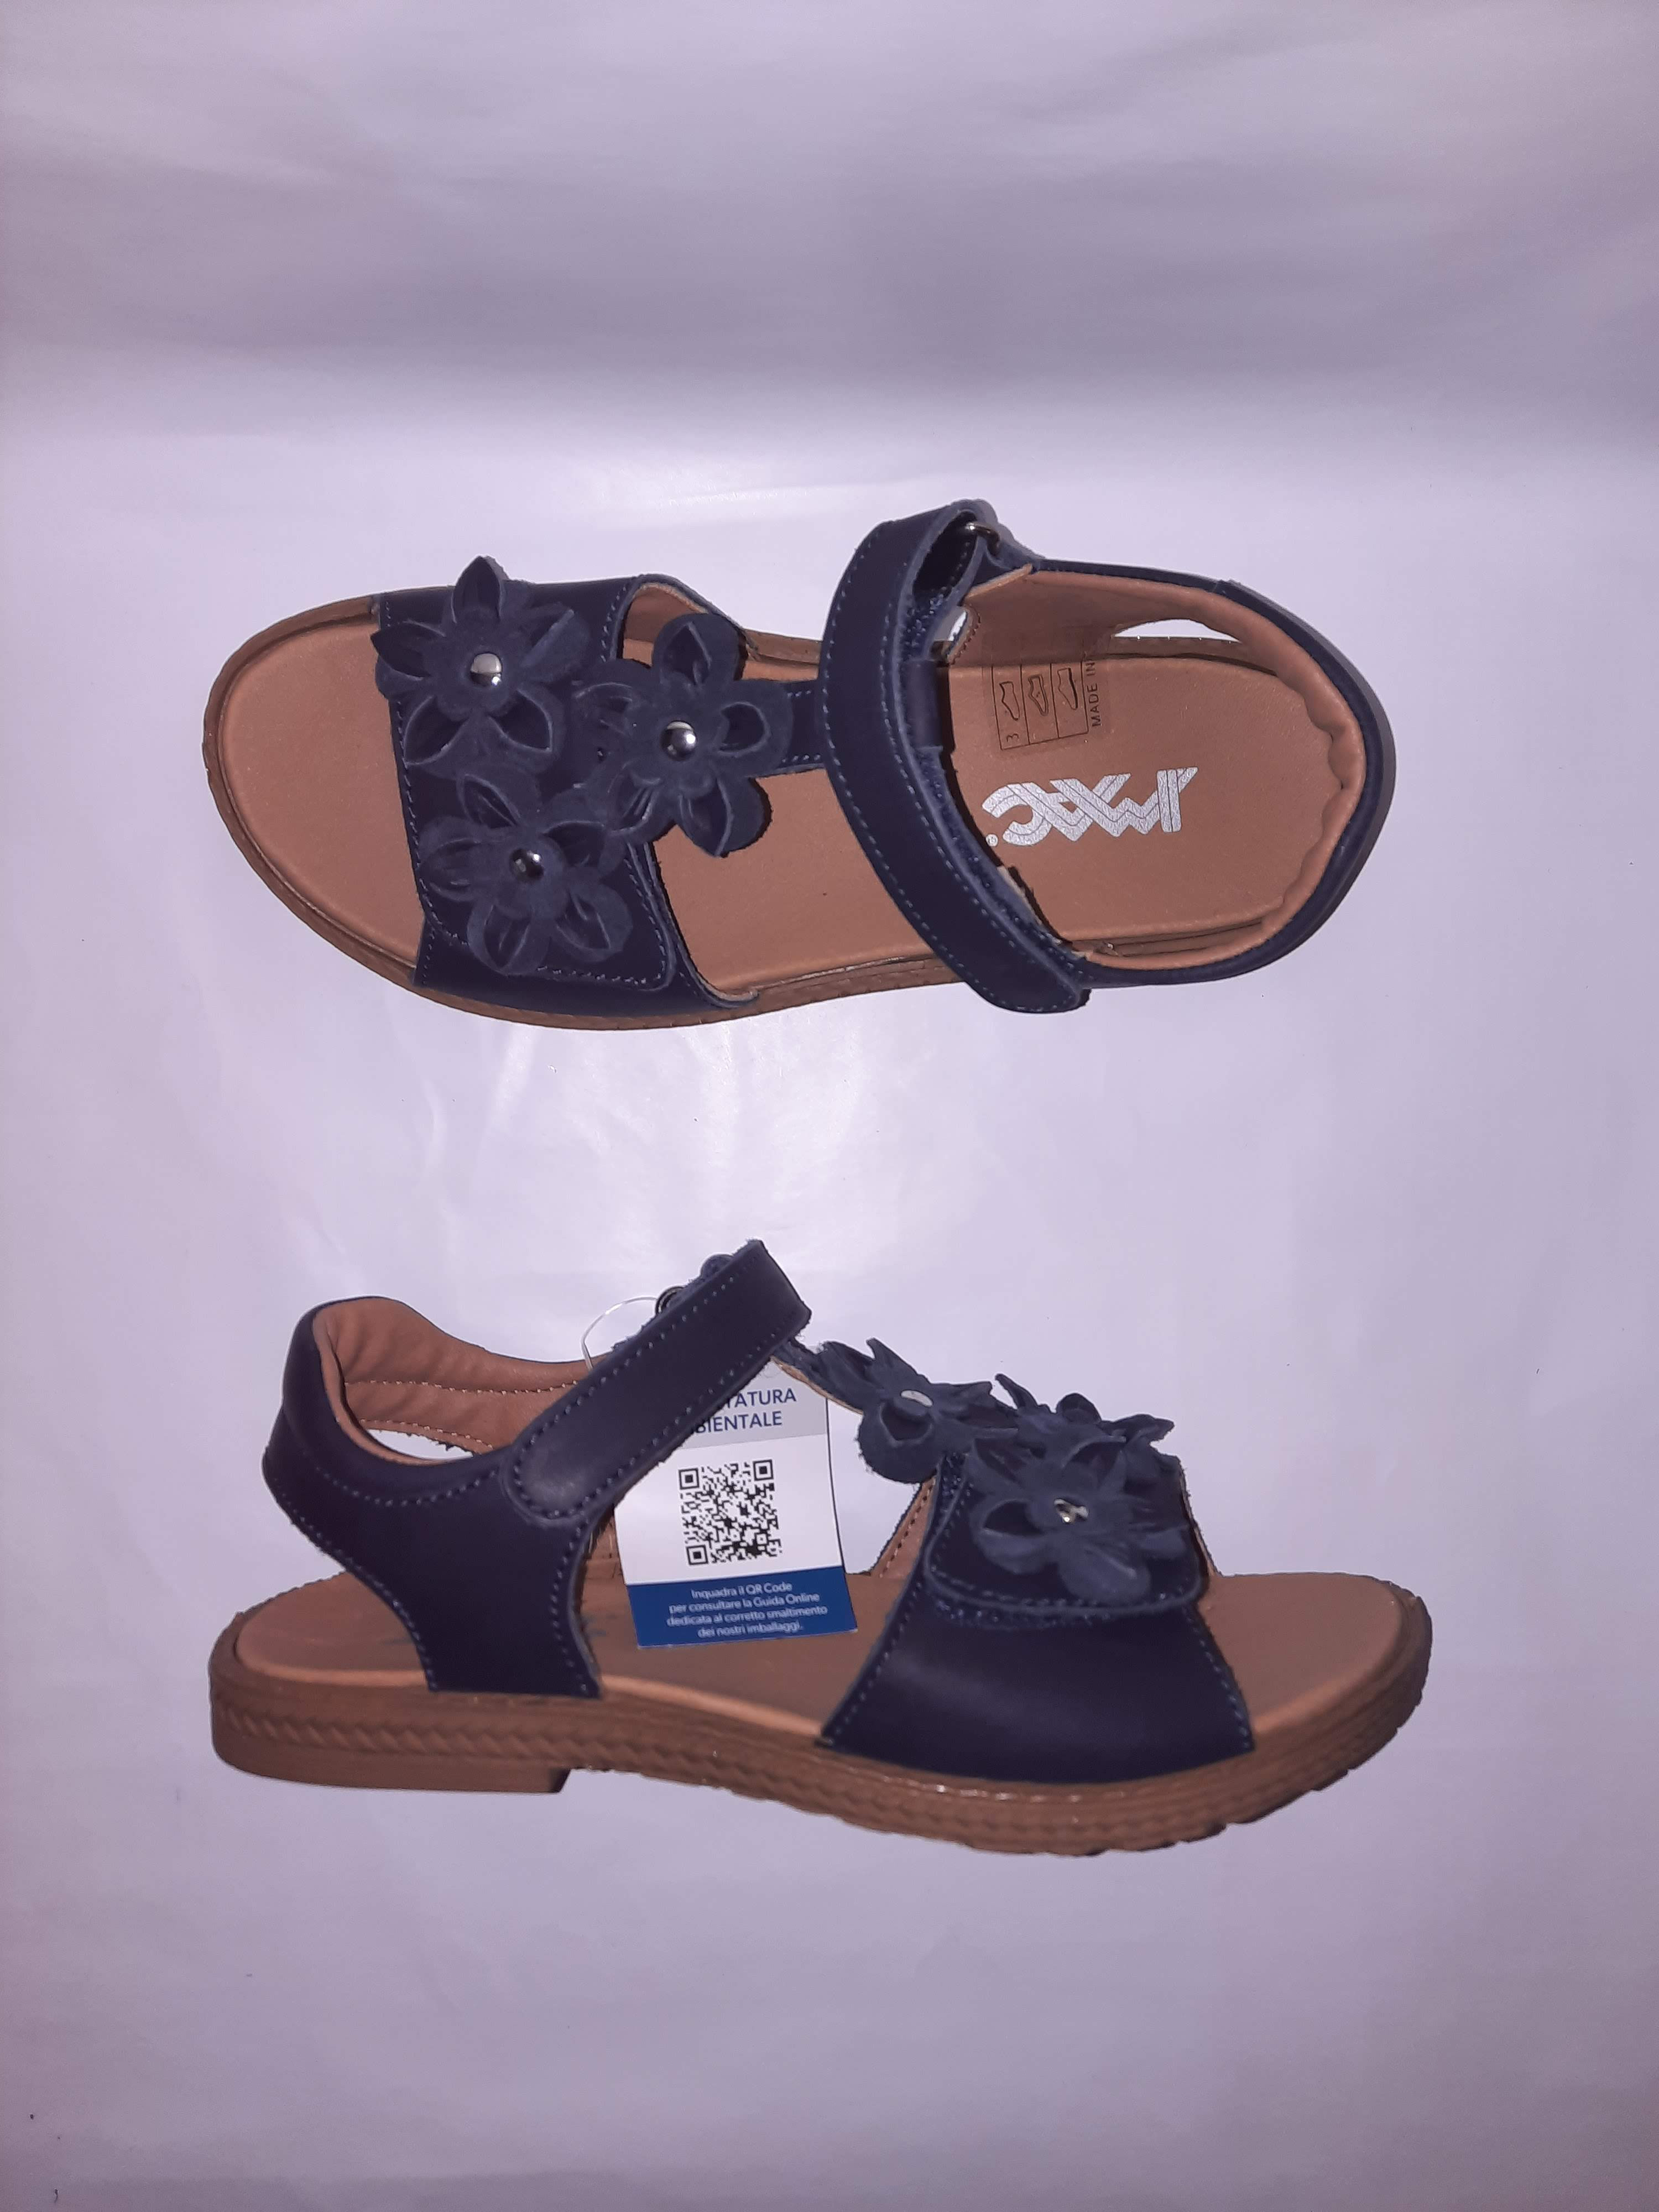 IMAC letní sandálky Amelia blue/black 377424 Velikost: 40